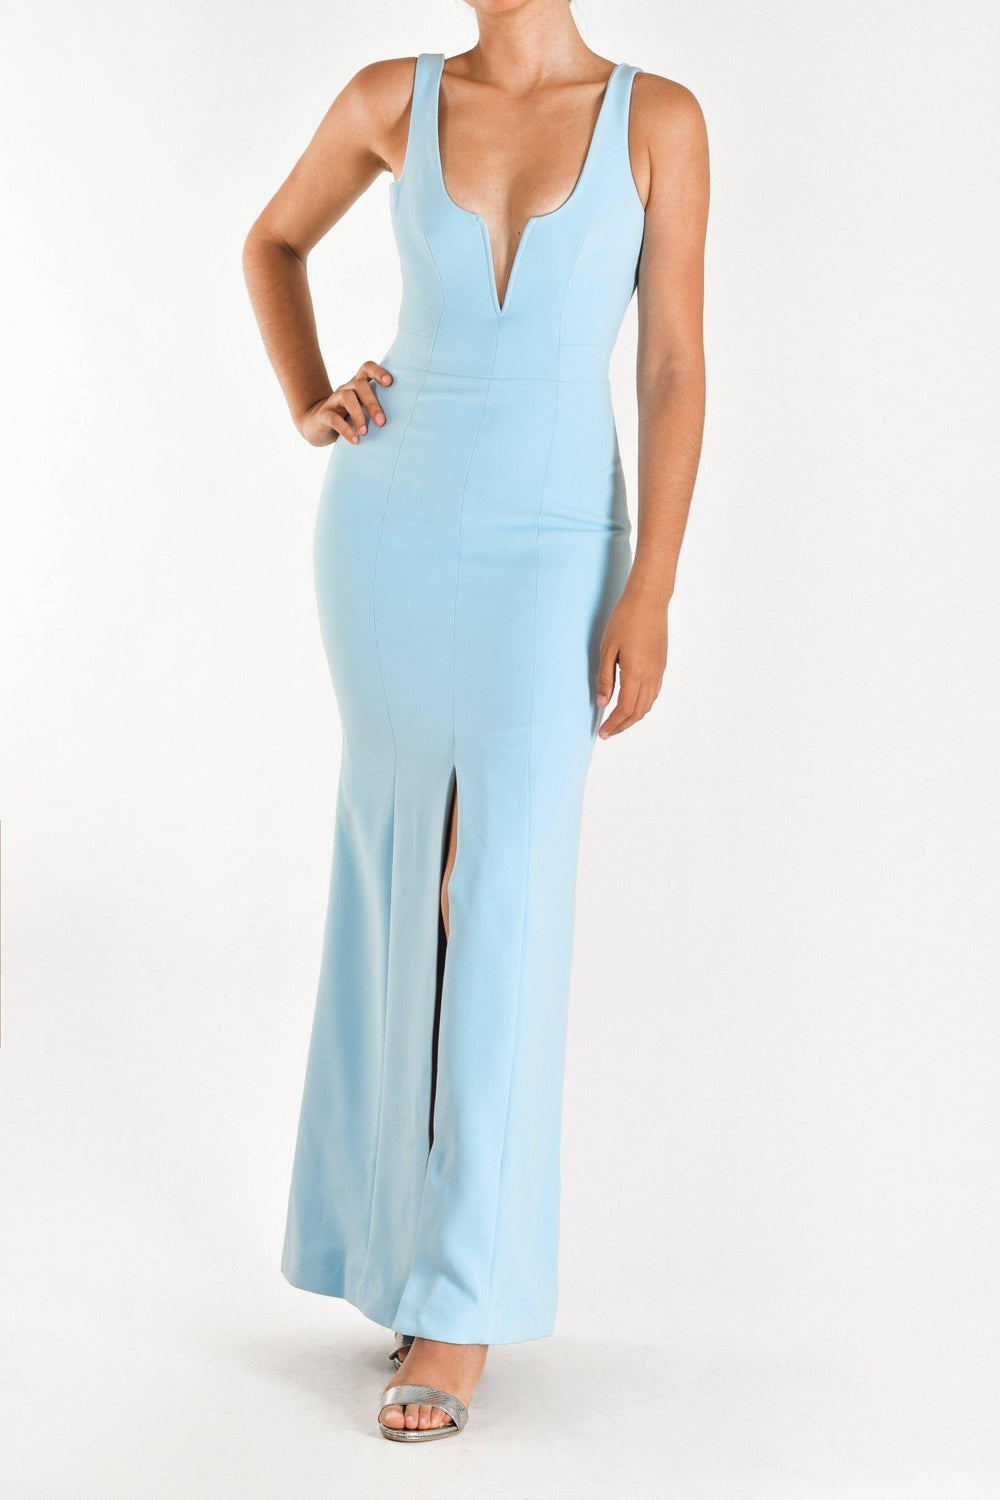 Macie - vestido largo azul - Lend the Trend renta de vestidos mexico